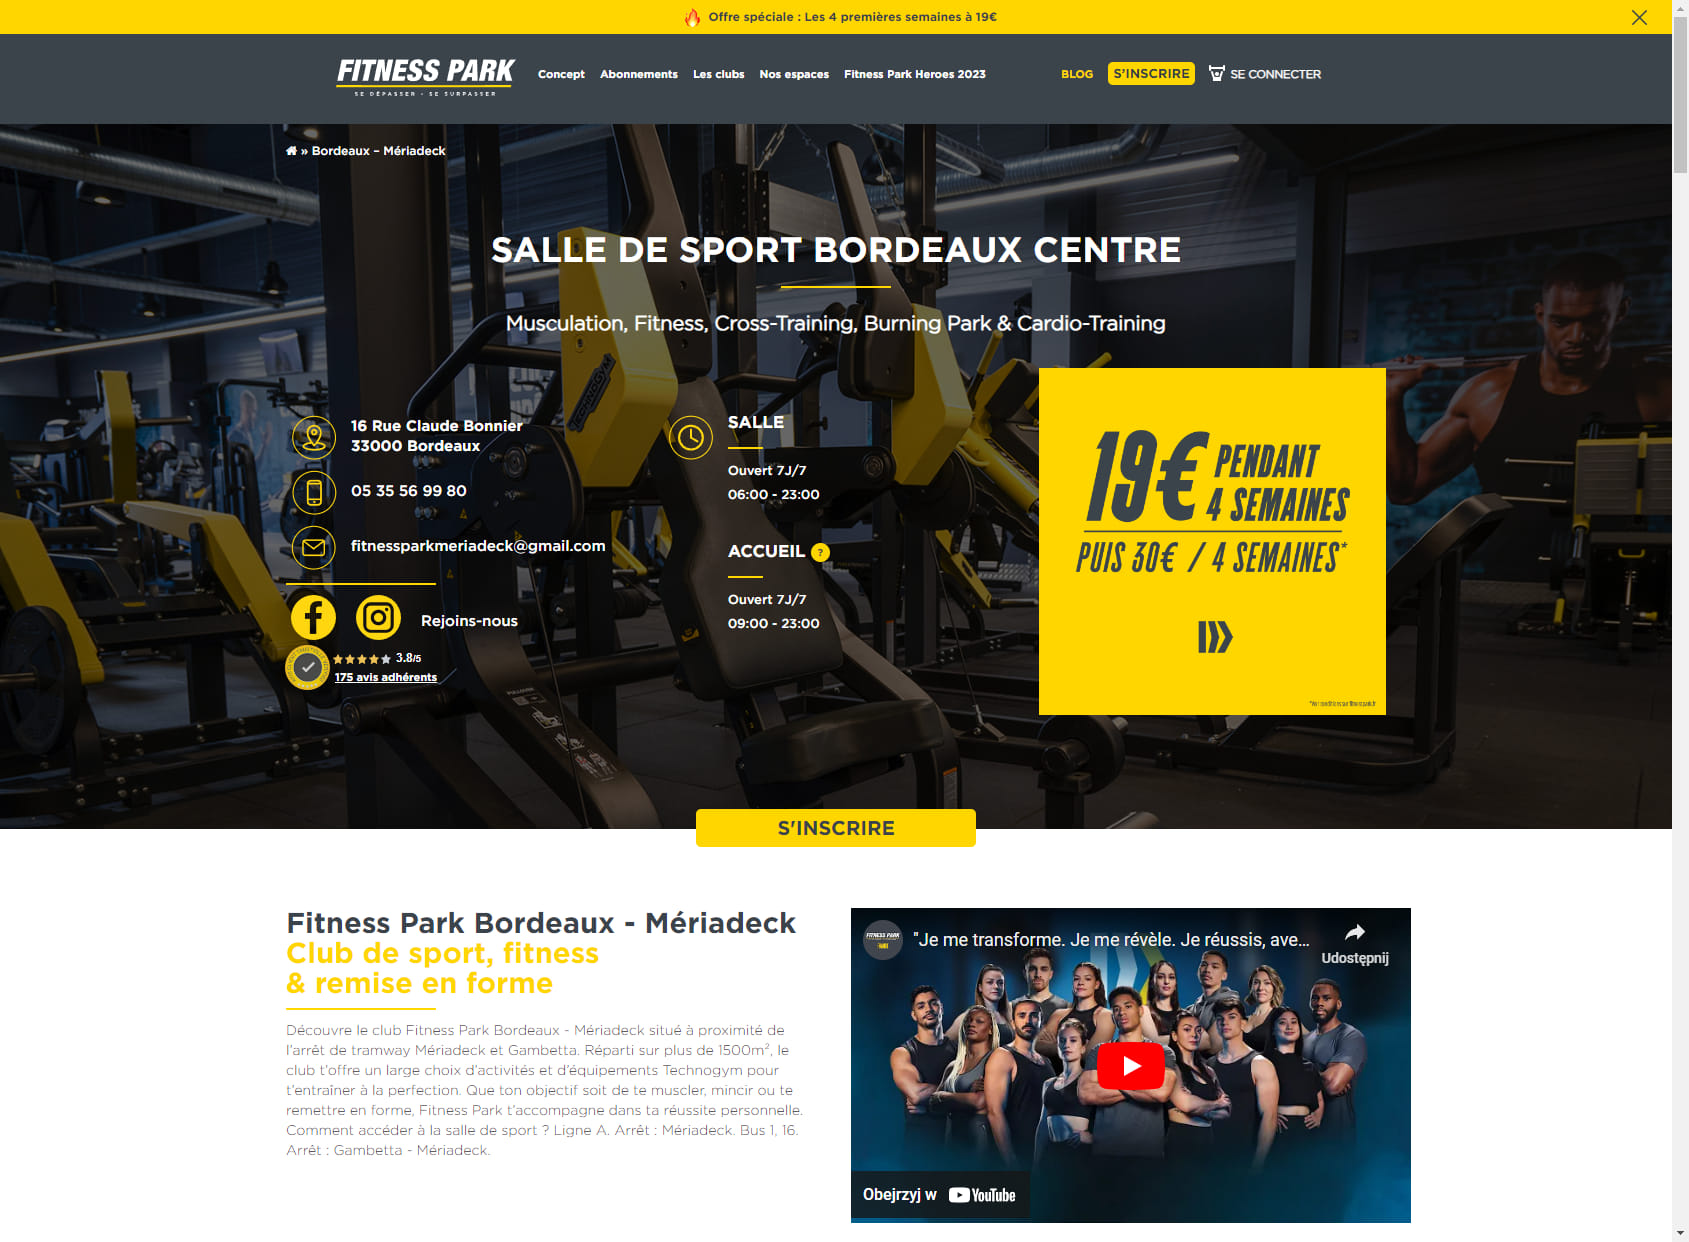 Salle de sport Bordeaux Centre - Mériadeck - Fitness Park